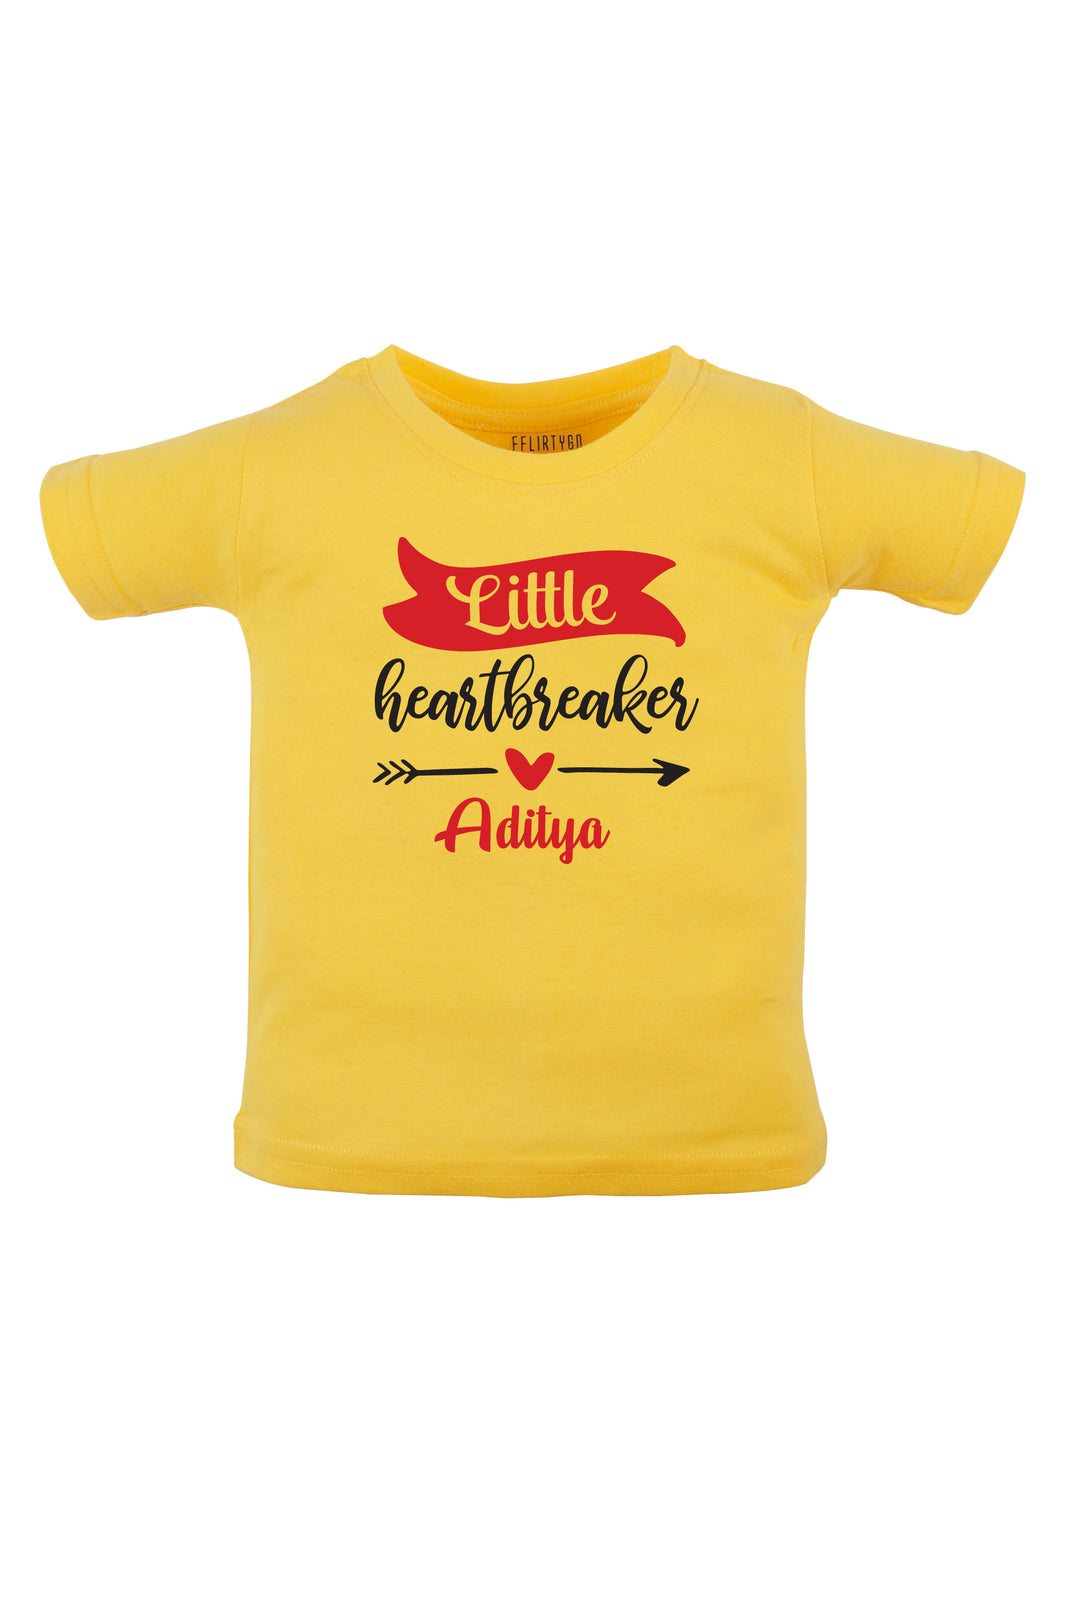 Little Heart Breaker Kids T Shirt w/ Custom Name